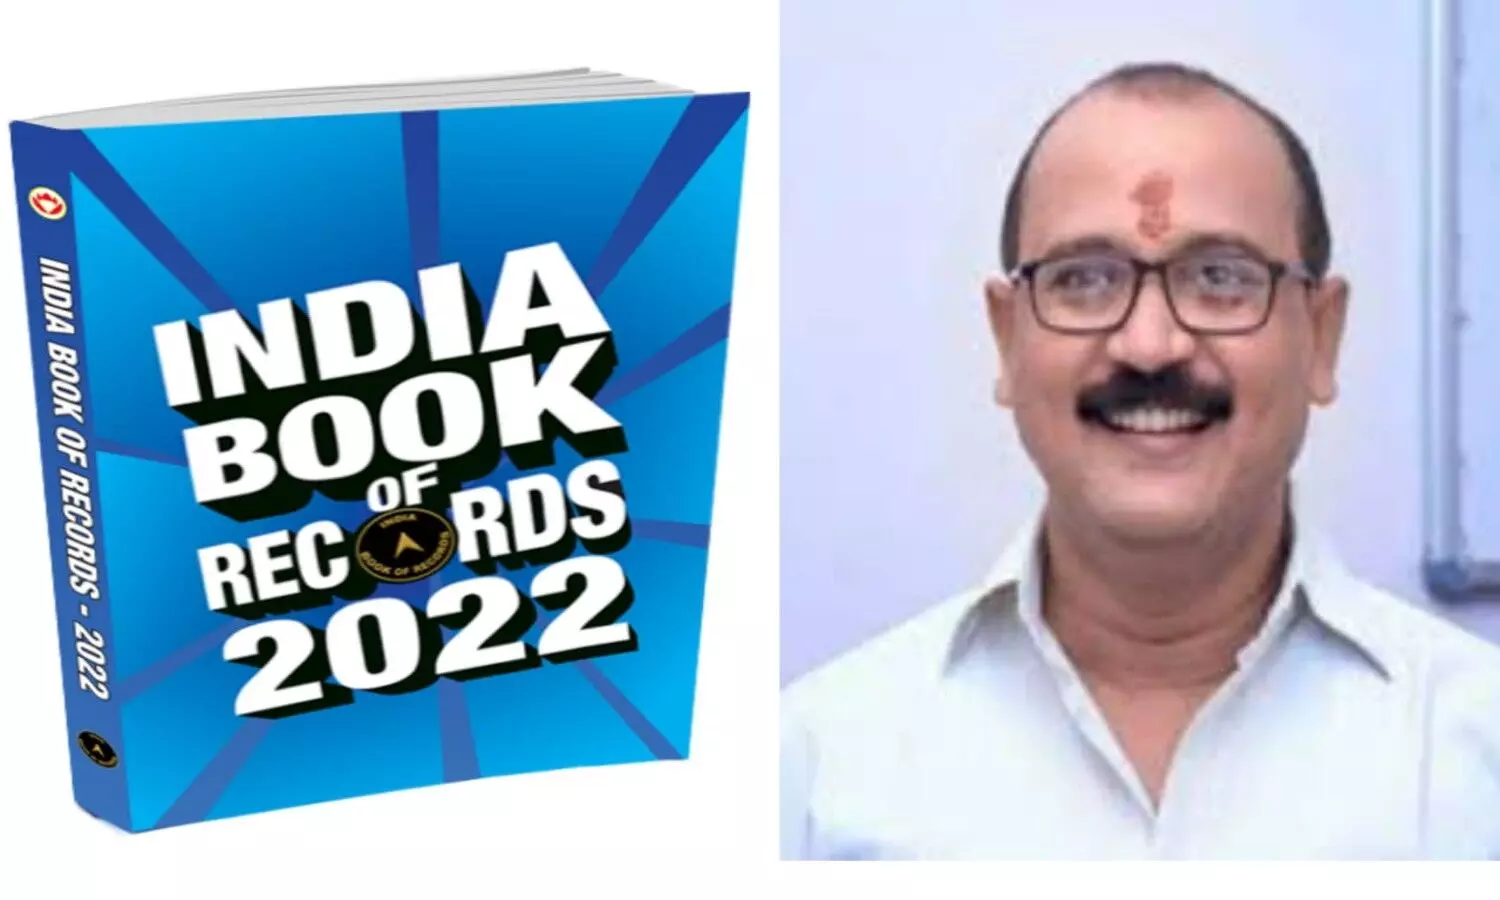 author Murli Manohar Srivastava to be awarded the India Book of Records